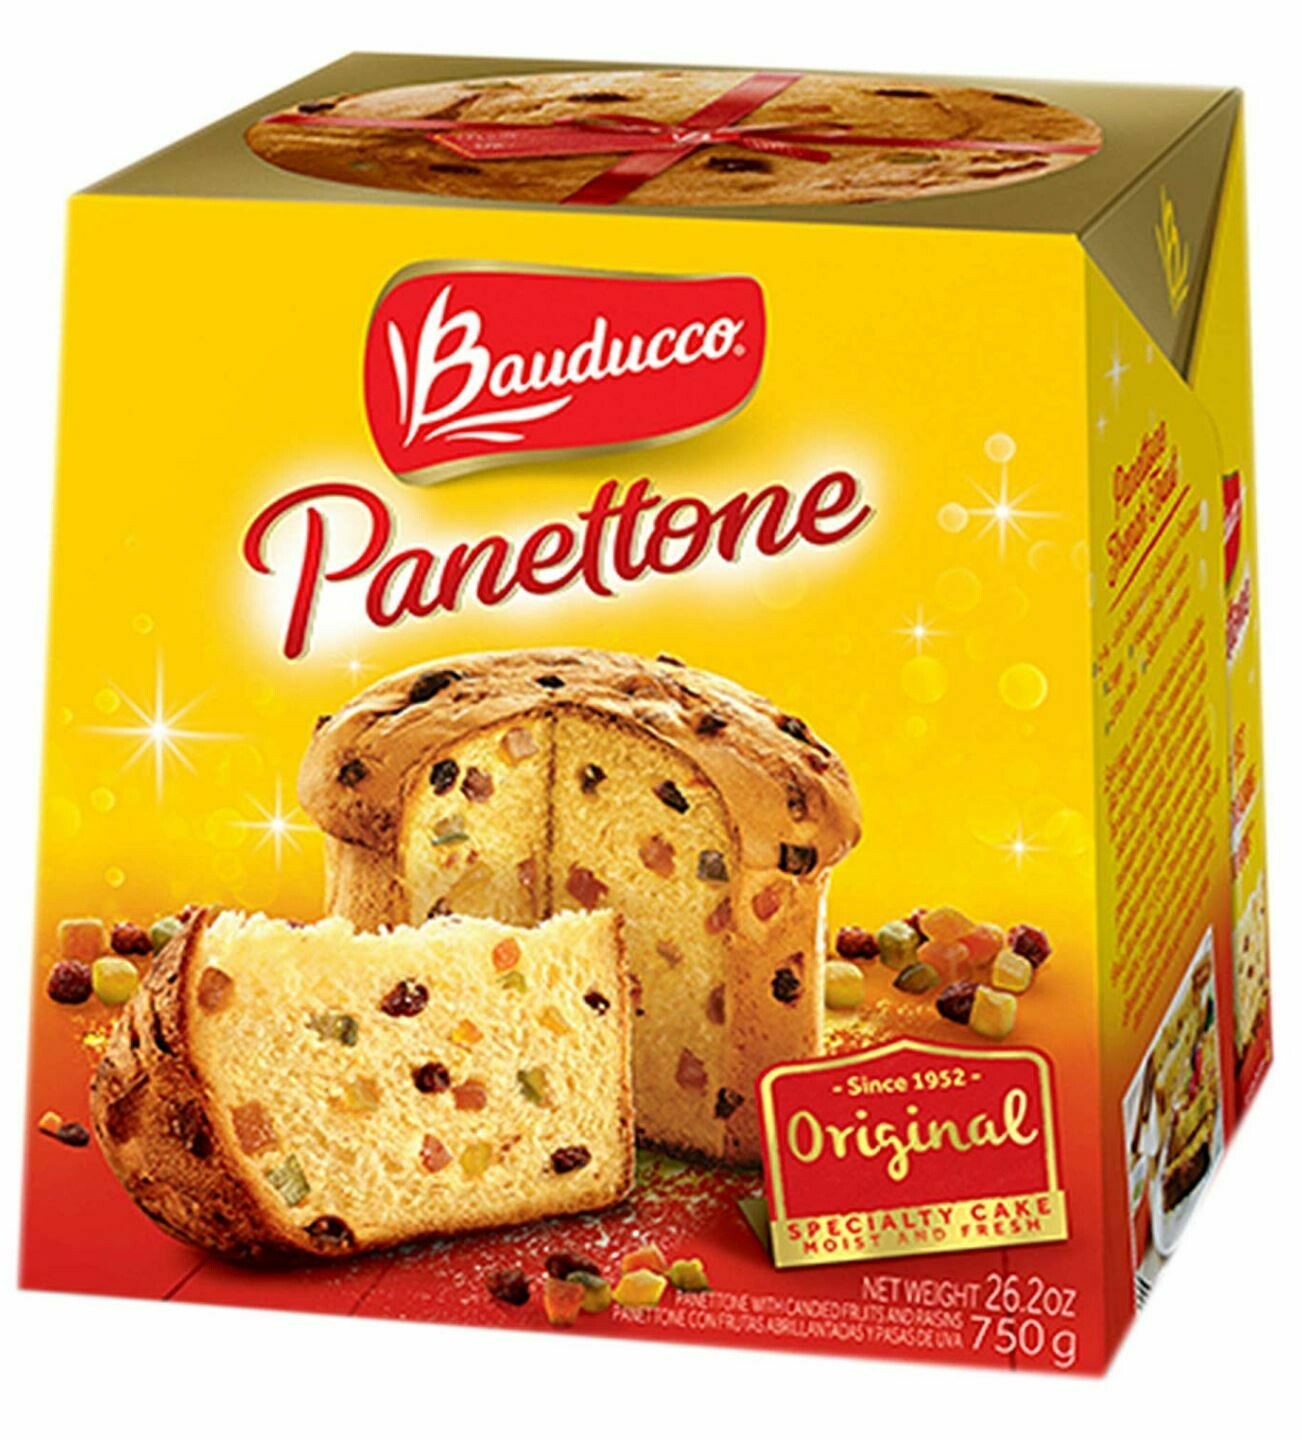 ፓንቶኔ ኬክ ቴምር ያለው Bauducco Panettone Original, 26.2 oz